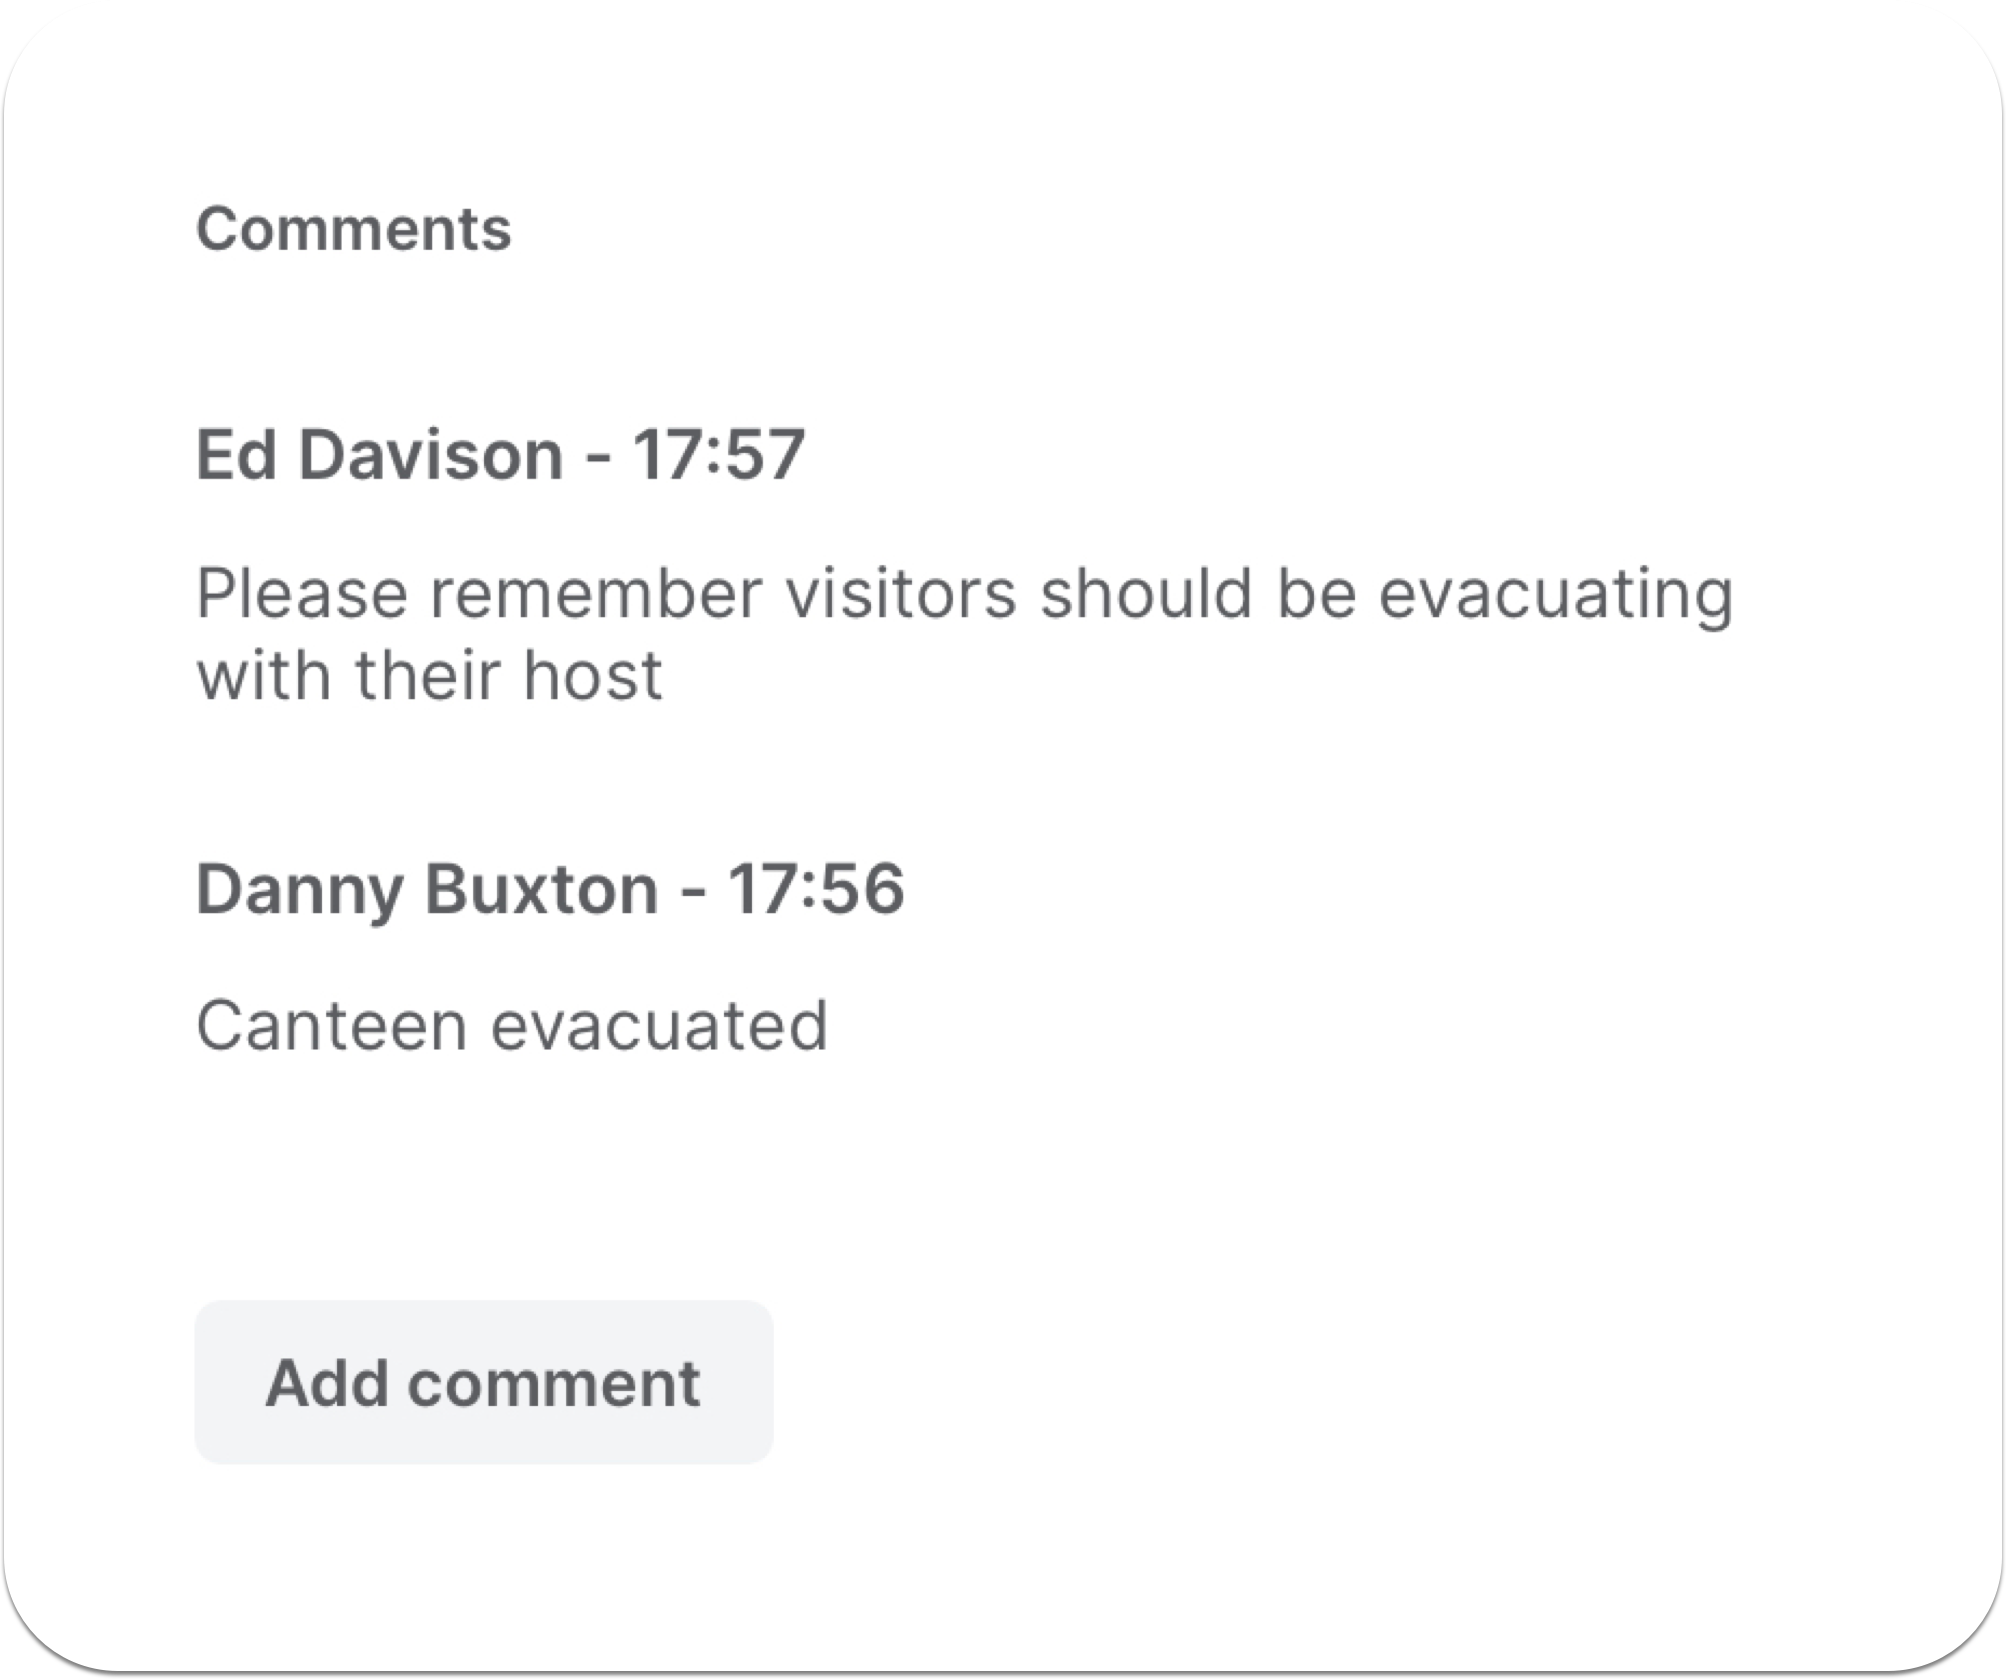 Kommentare werden dem gemeinsamen Evakuierungsbericht in Echtzeit hinzugefügt